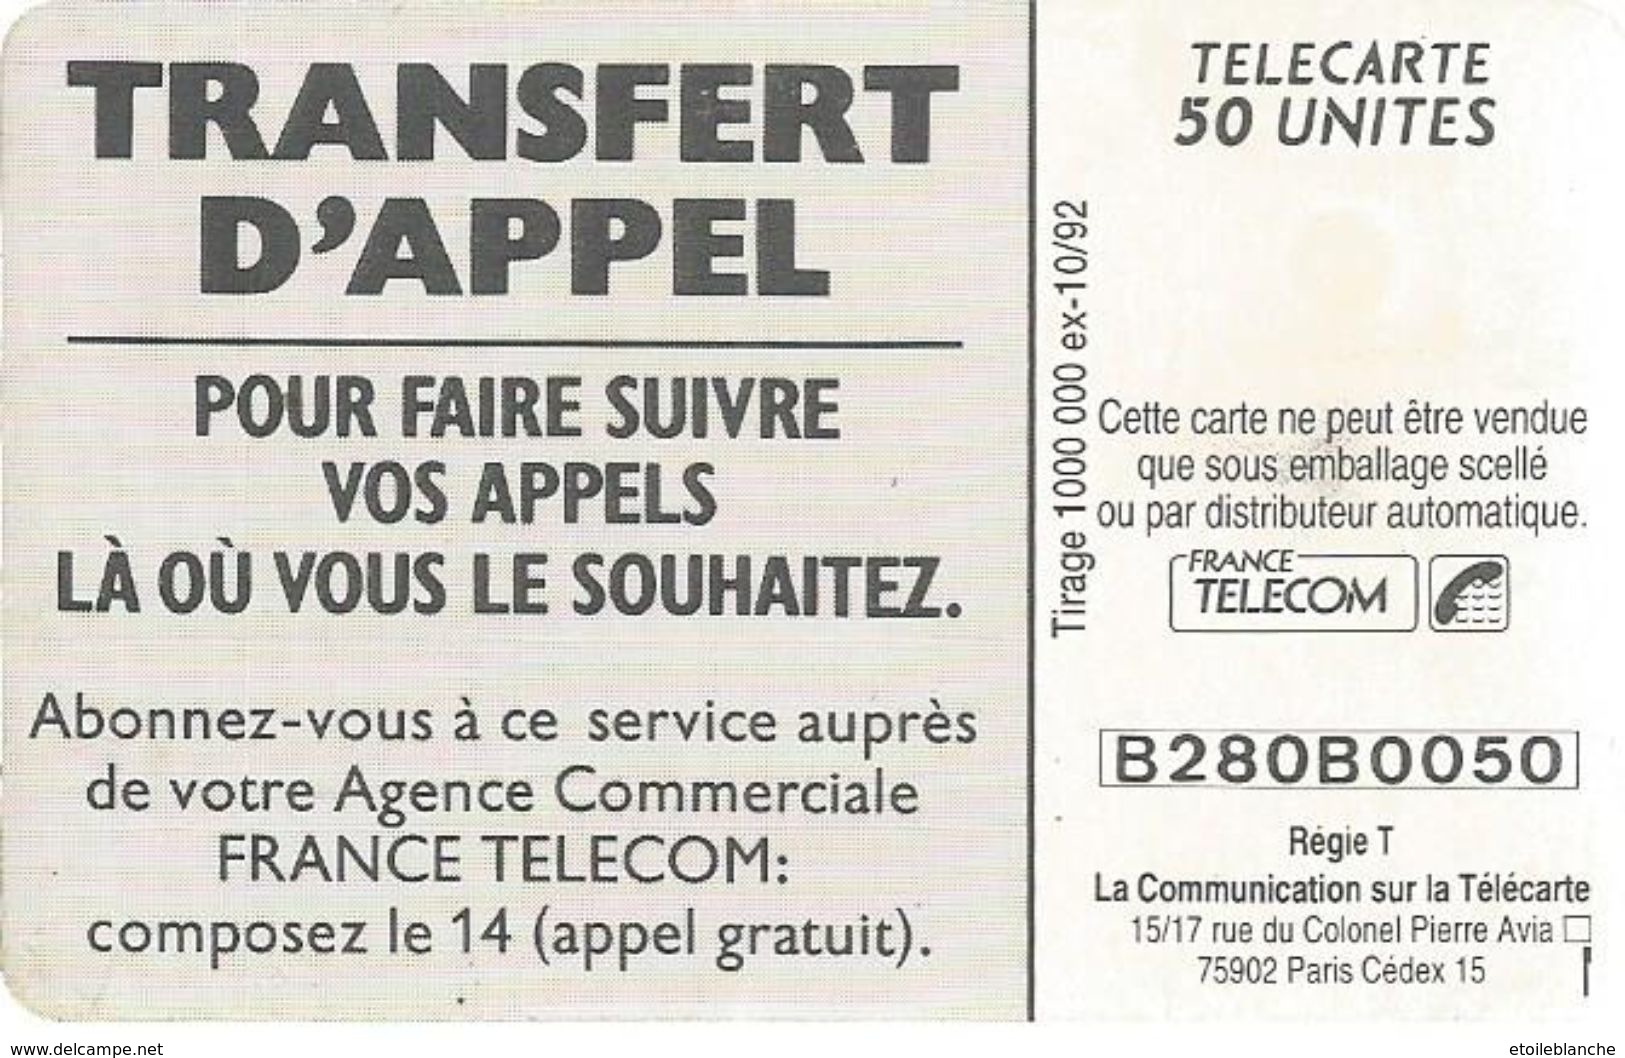 Telecarte France Telecom 1992 - Publicité, Transfert D'appel - Homme En Vacances, Plage, Famille - Operatori Telecom